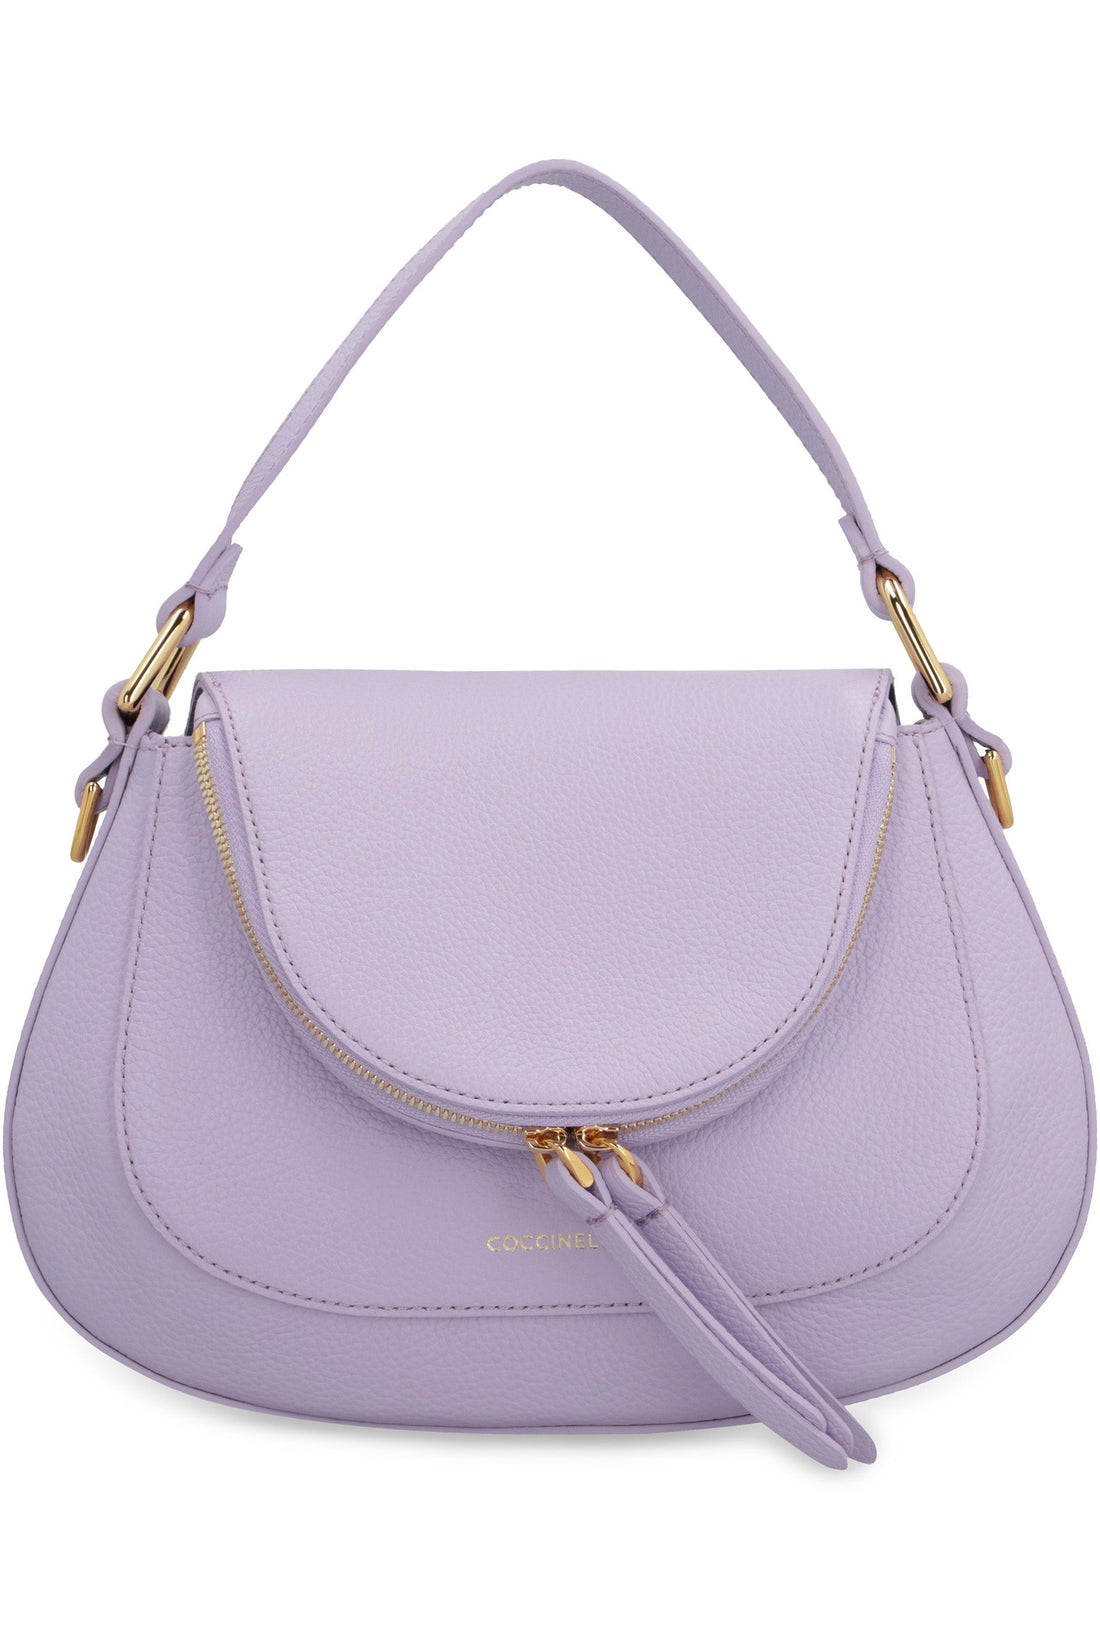 Coccinelle-OUTLET-SALE-Sole leather handbag-ARCHIVIST